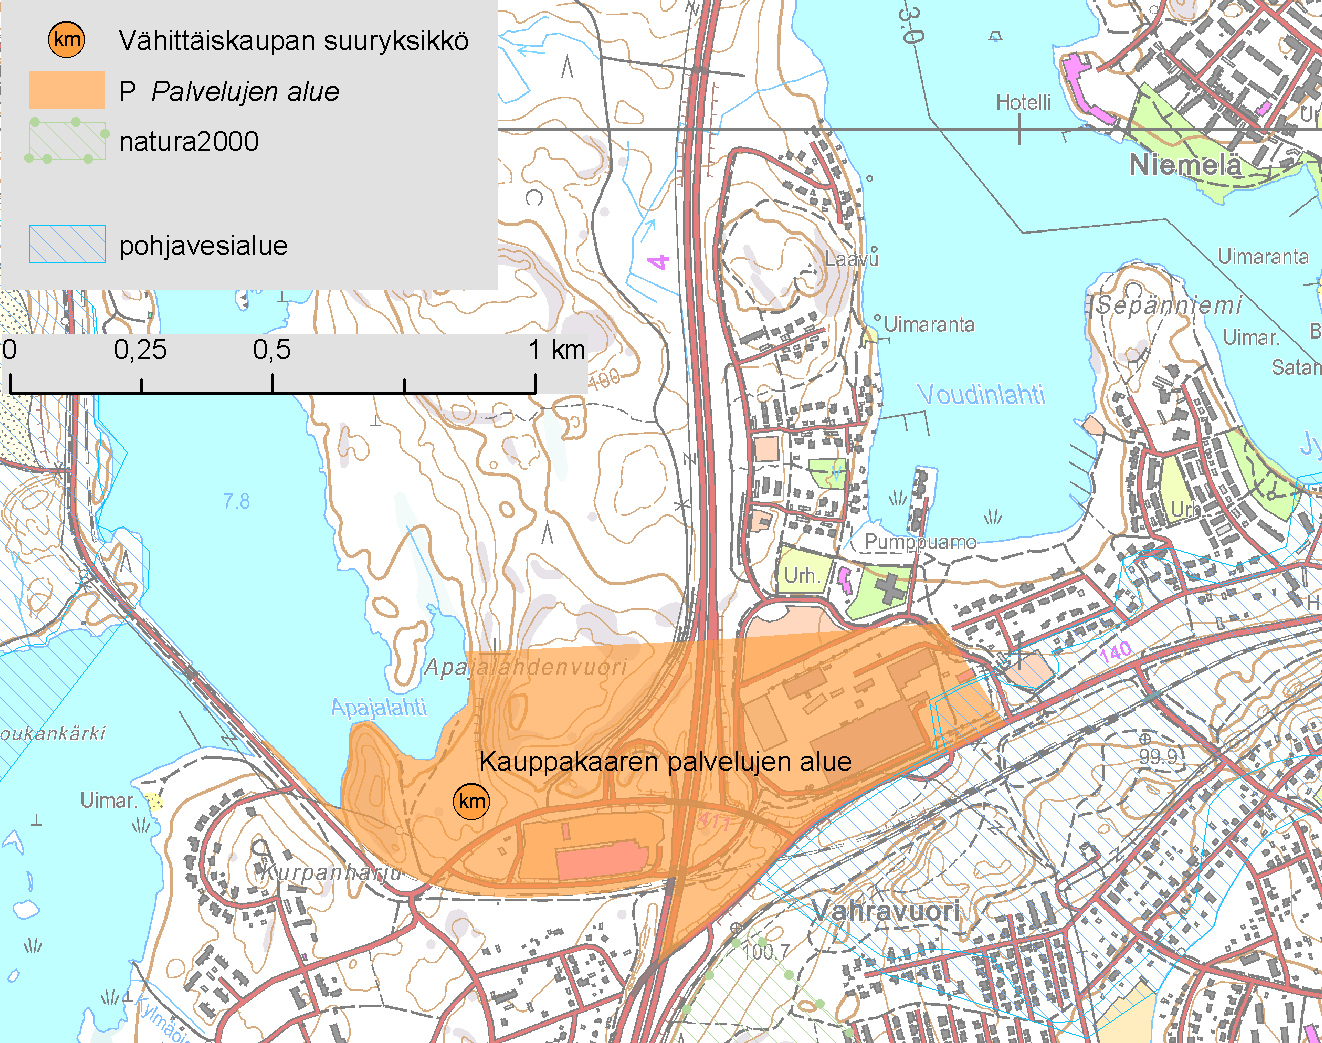 2.3. Kauppakaaren palvelujen alue, Heinola Alueella on myös kohdemerkintä Tähtiniemen vähittäiskaupan suuryksikkö.